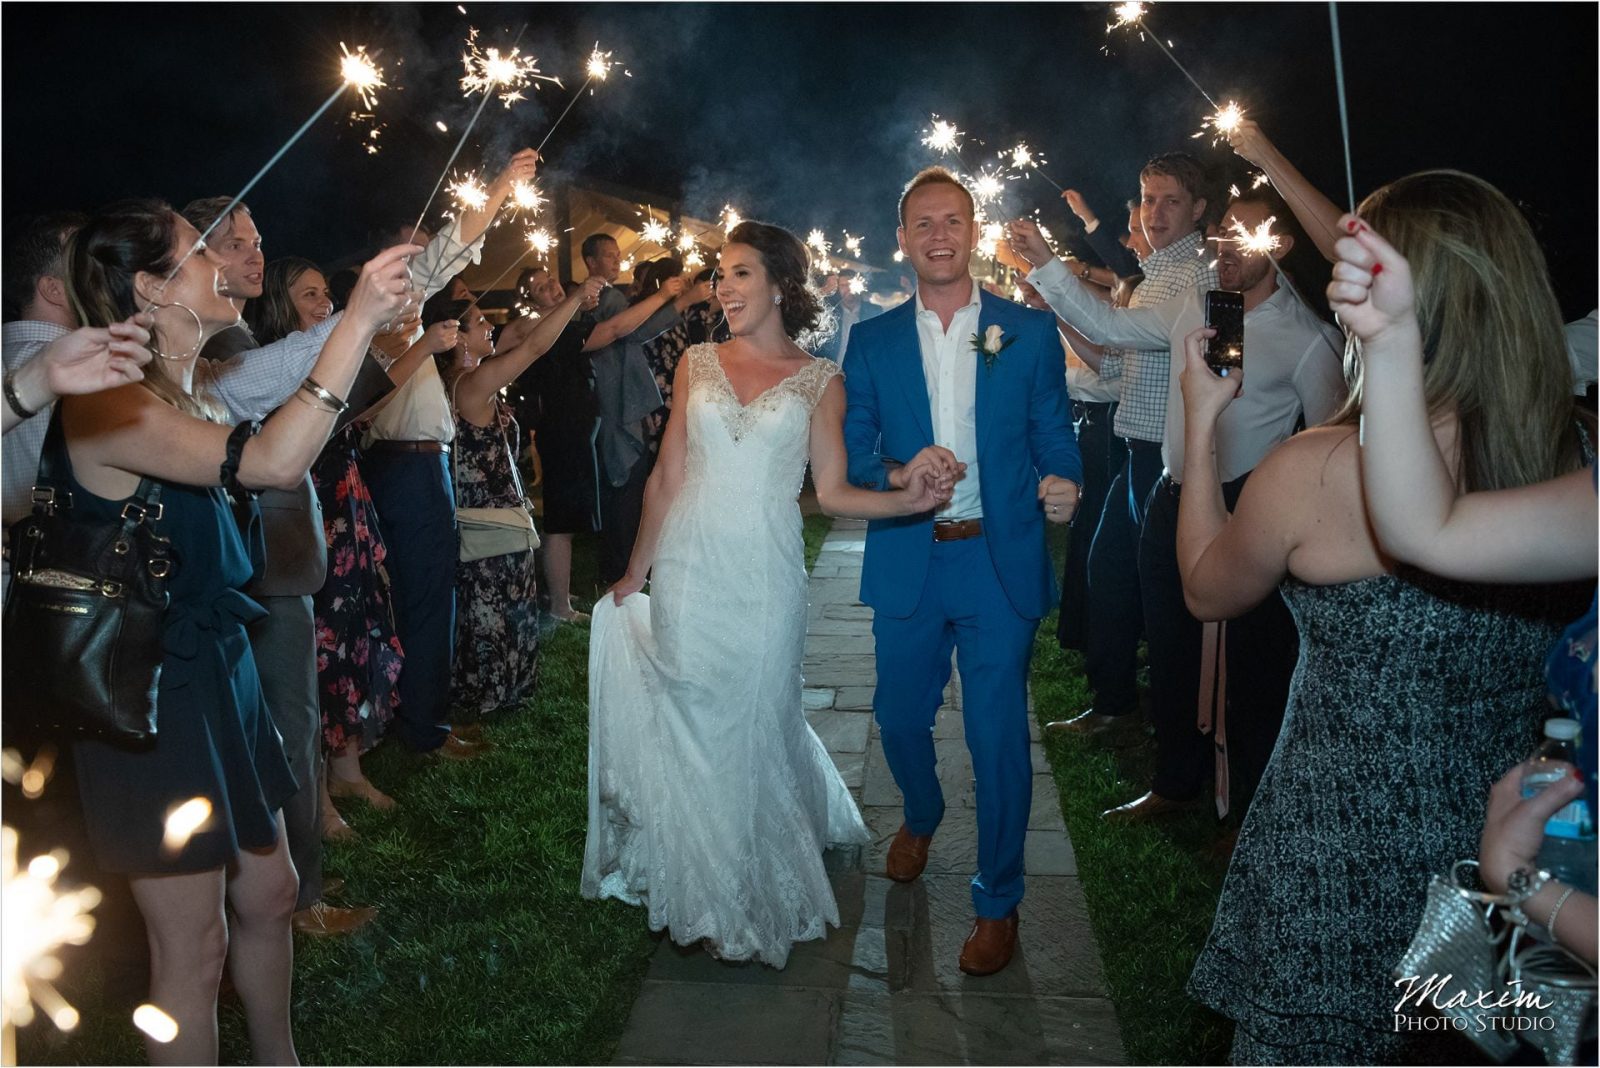 Pinecroft Crosley Estate Cincinnati Wedding Reception sparklers